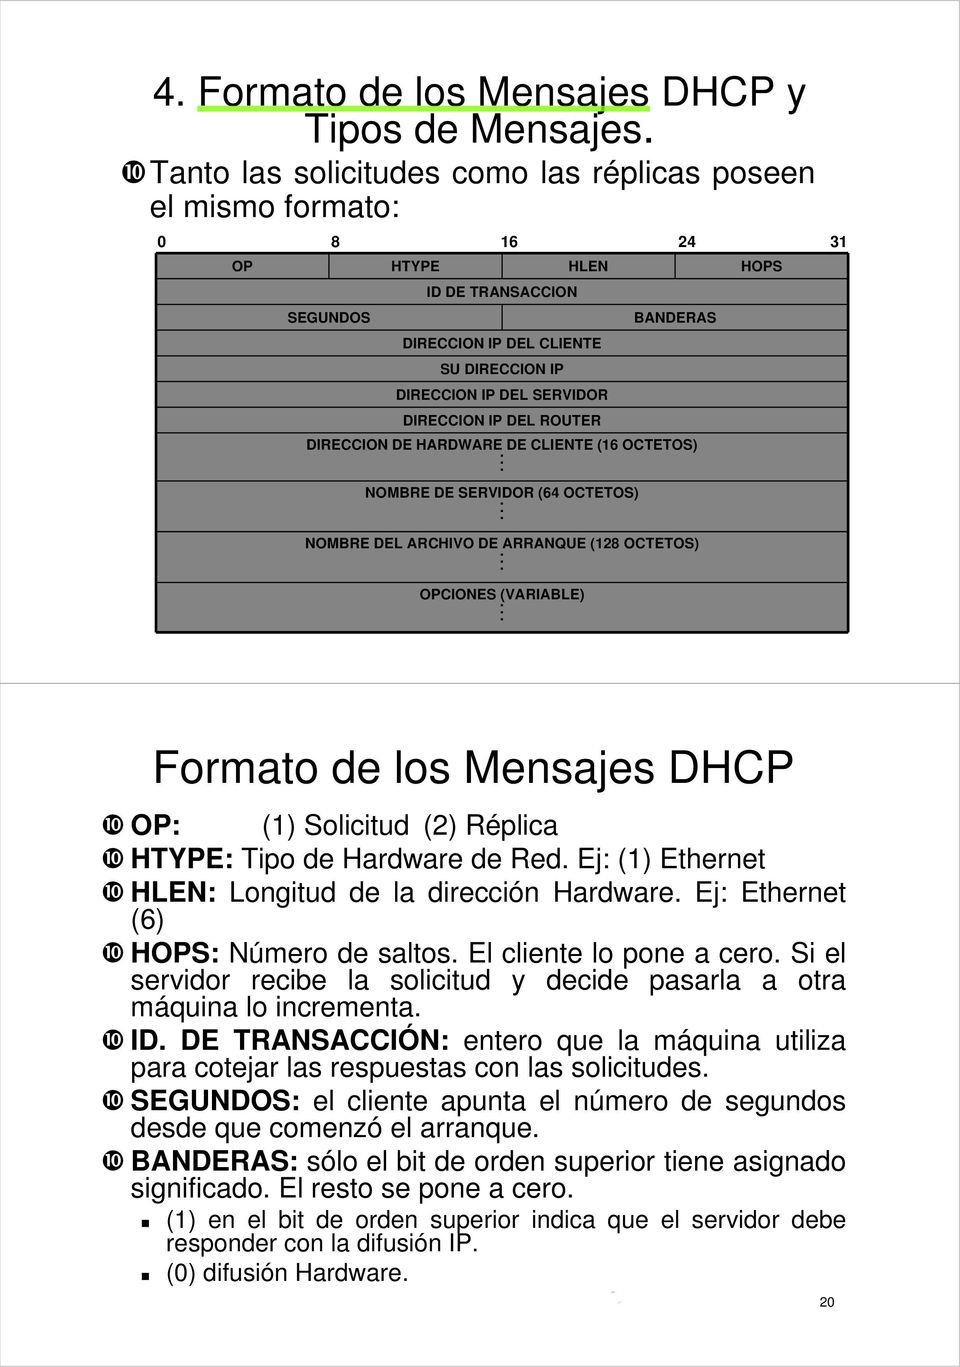 DIRECCION IP DEL ROUTER BANDERAS DIRECCION DE HARDWARE DE CLIENTE (16 OCTETOS). NOMBRE DE SERVIDOR (64 OCTETOS). NOMBRE DEL ARCHIVO DE ARRANQUE (128 OCTETOS). OPCIONES (VARIABLE).